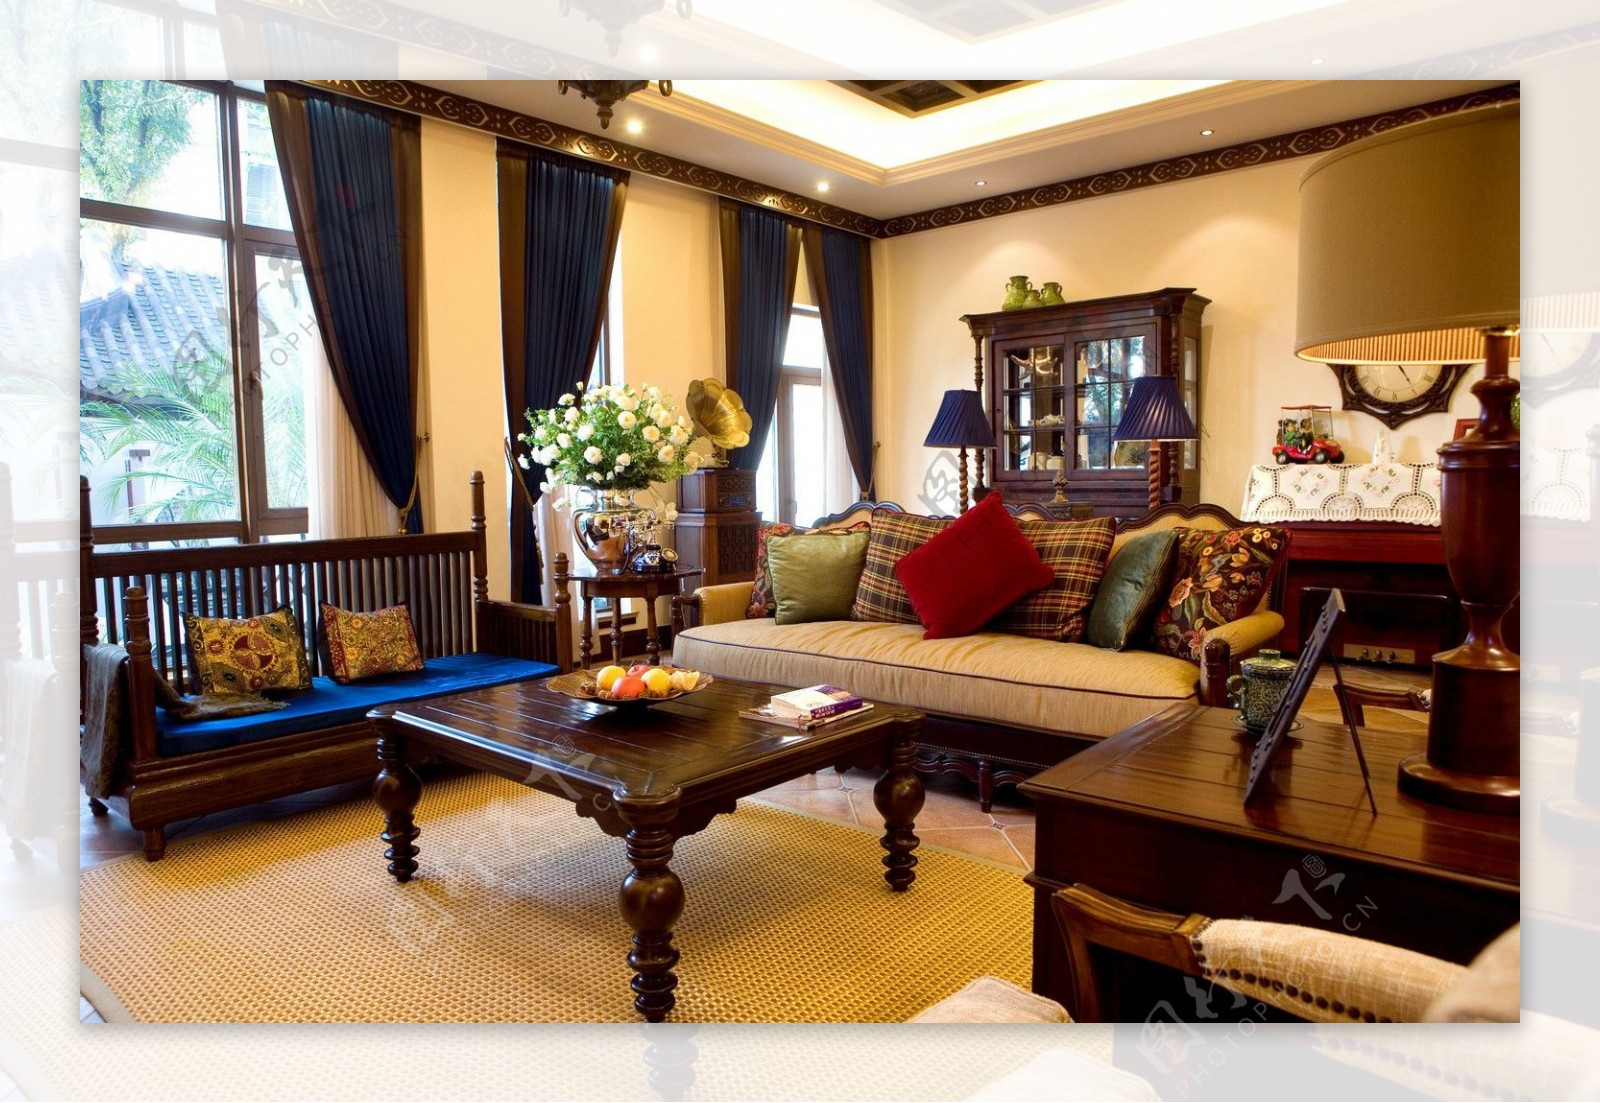 中式时尚客厅深蓝色窗帘室内装修效果图